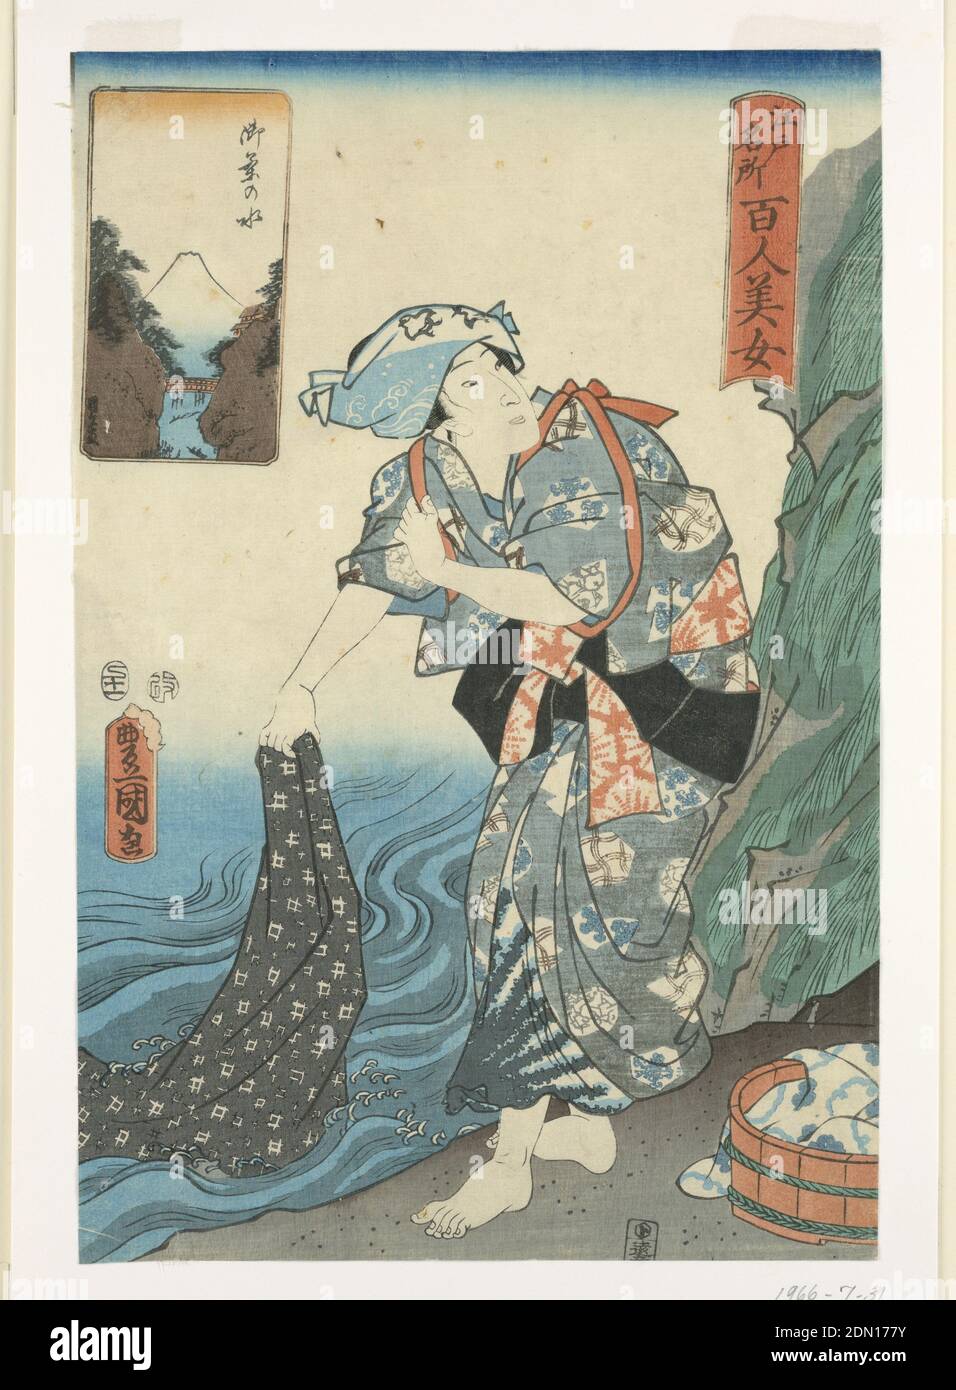 Donna che lava tessuto in un ruscello, Utagawa Kunisada, giapponese, 1786 – 1864, stampa a blocchi di legno in inchiostro colorato su carta, questo artigiano, decorato in vari disegni, sta sciacquando un tessuto in acqua. Mentre i suoi indumenti sono principalmente progettati utilizzando tecniche shibori e bingata, katazome è stato implementato per creare la stampa astratta a scacchi. Dietro di lei è un altro tessuto che contiene due tonalità di blu indaco. Un cartone animato in alto a sinistra mostra una chiara immagine del grande Monte Fuji., Giappone, 1857, teatro, Stampa Foto Stock